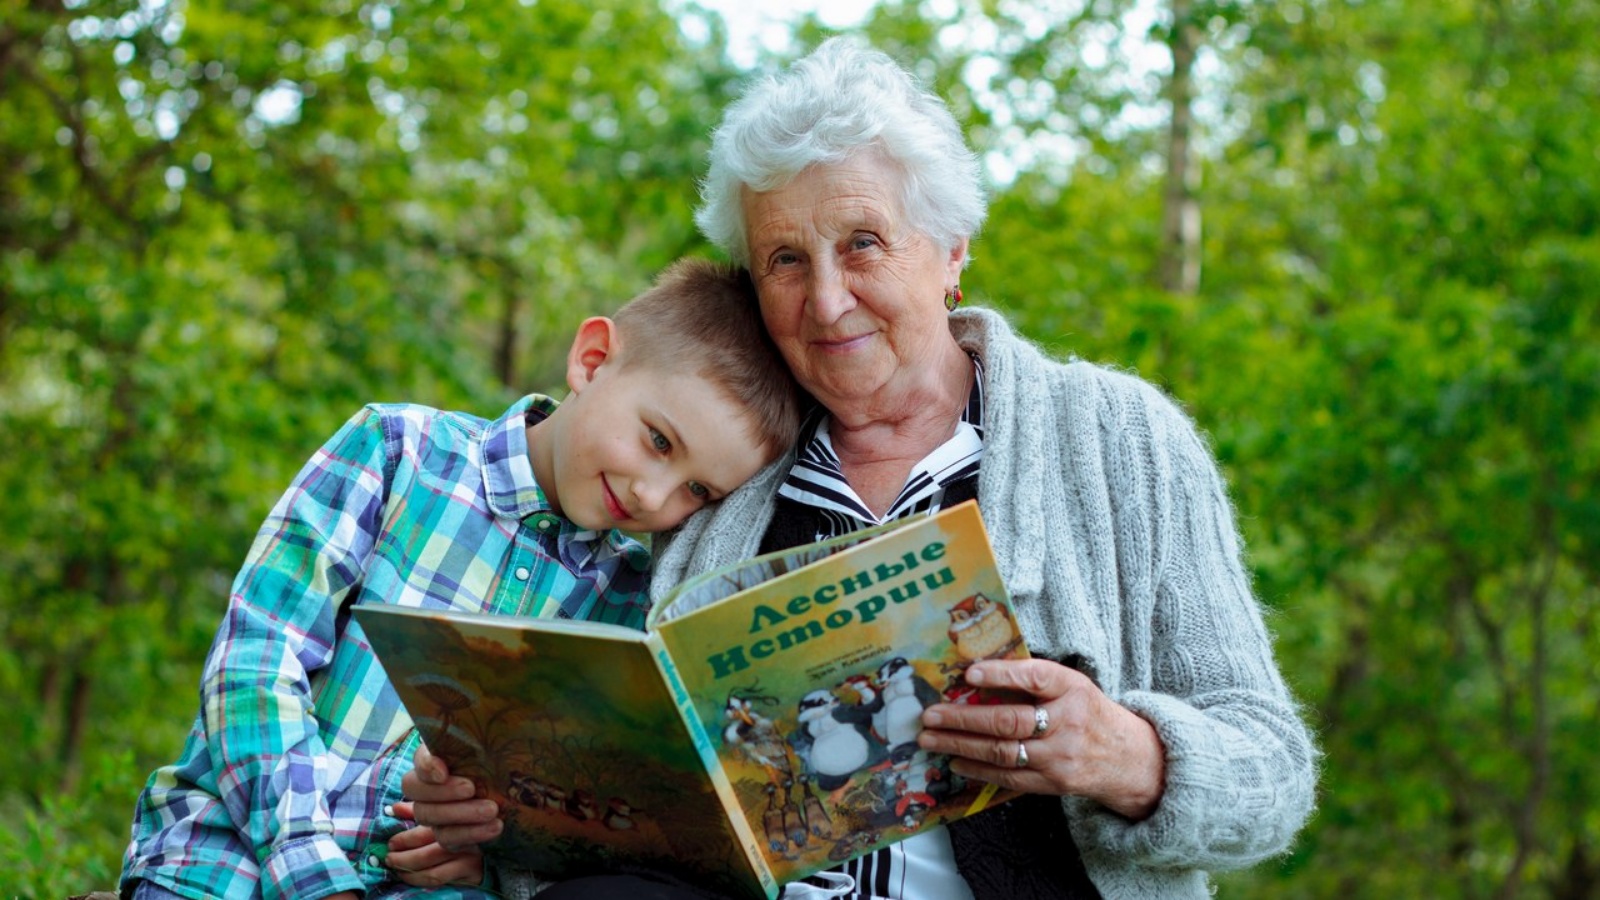 Книг у прабабушки было. Бабушка с внуками. Пенсионеры с внуками. Бабушка и дедушка. Пожилые люди и дети.